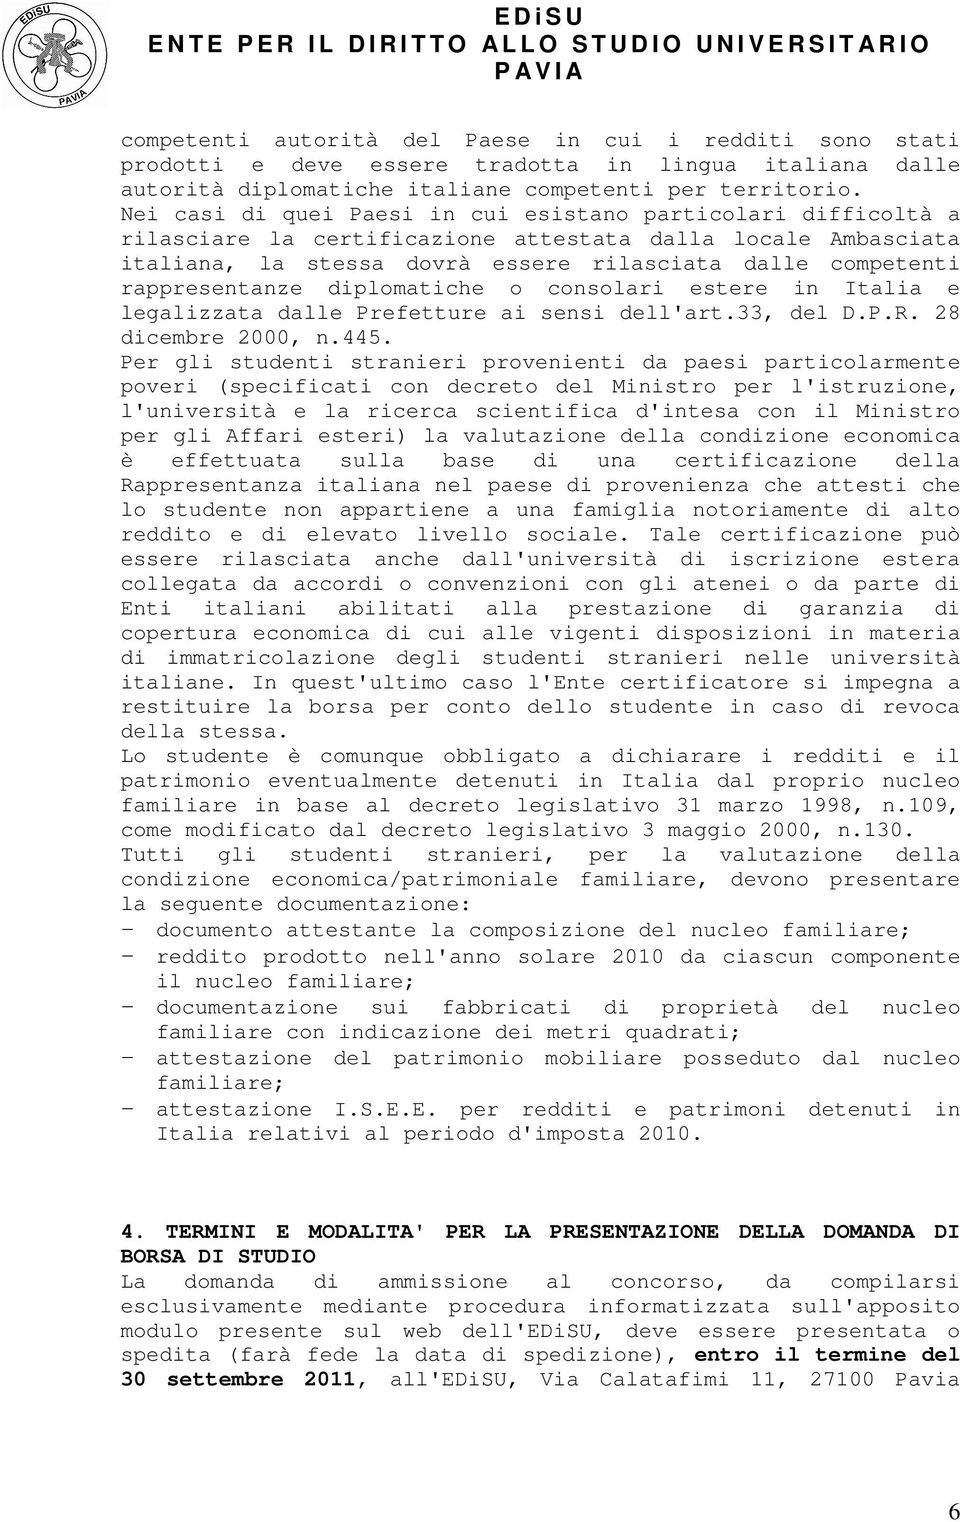 rappresentanze diplomatiche o consolari estere in Italia e legalizzata dalle Prefetture ai sensi dell'art.33, del D.P.R. 28 dicembre 2000, n.445.